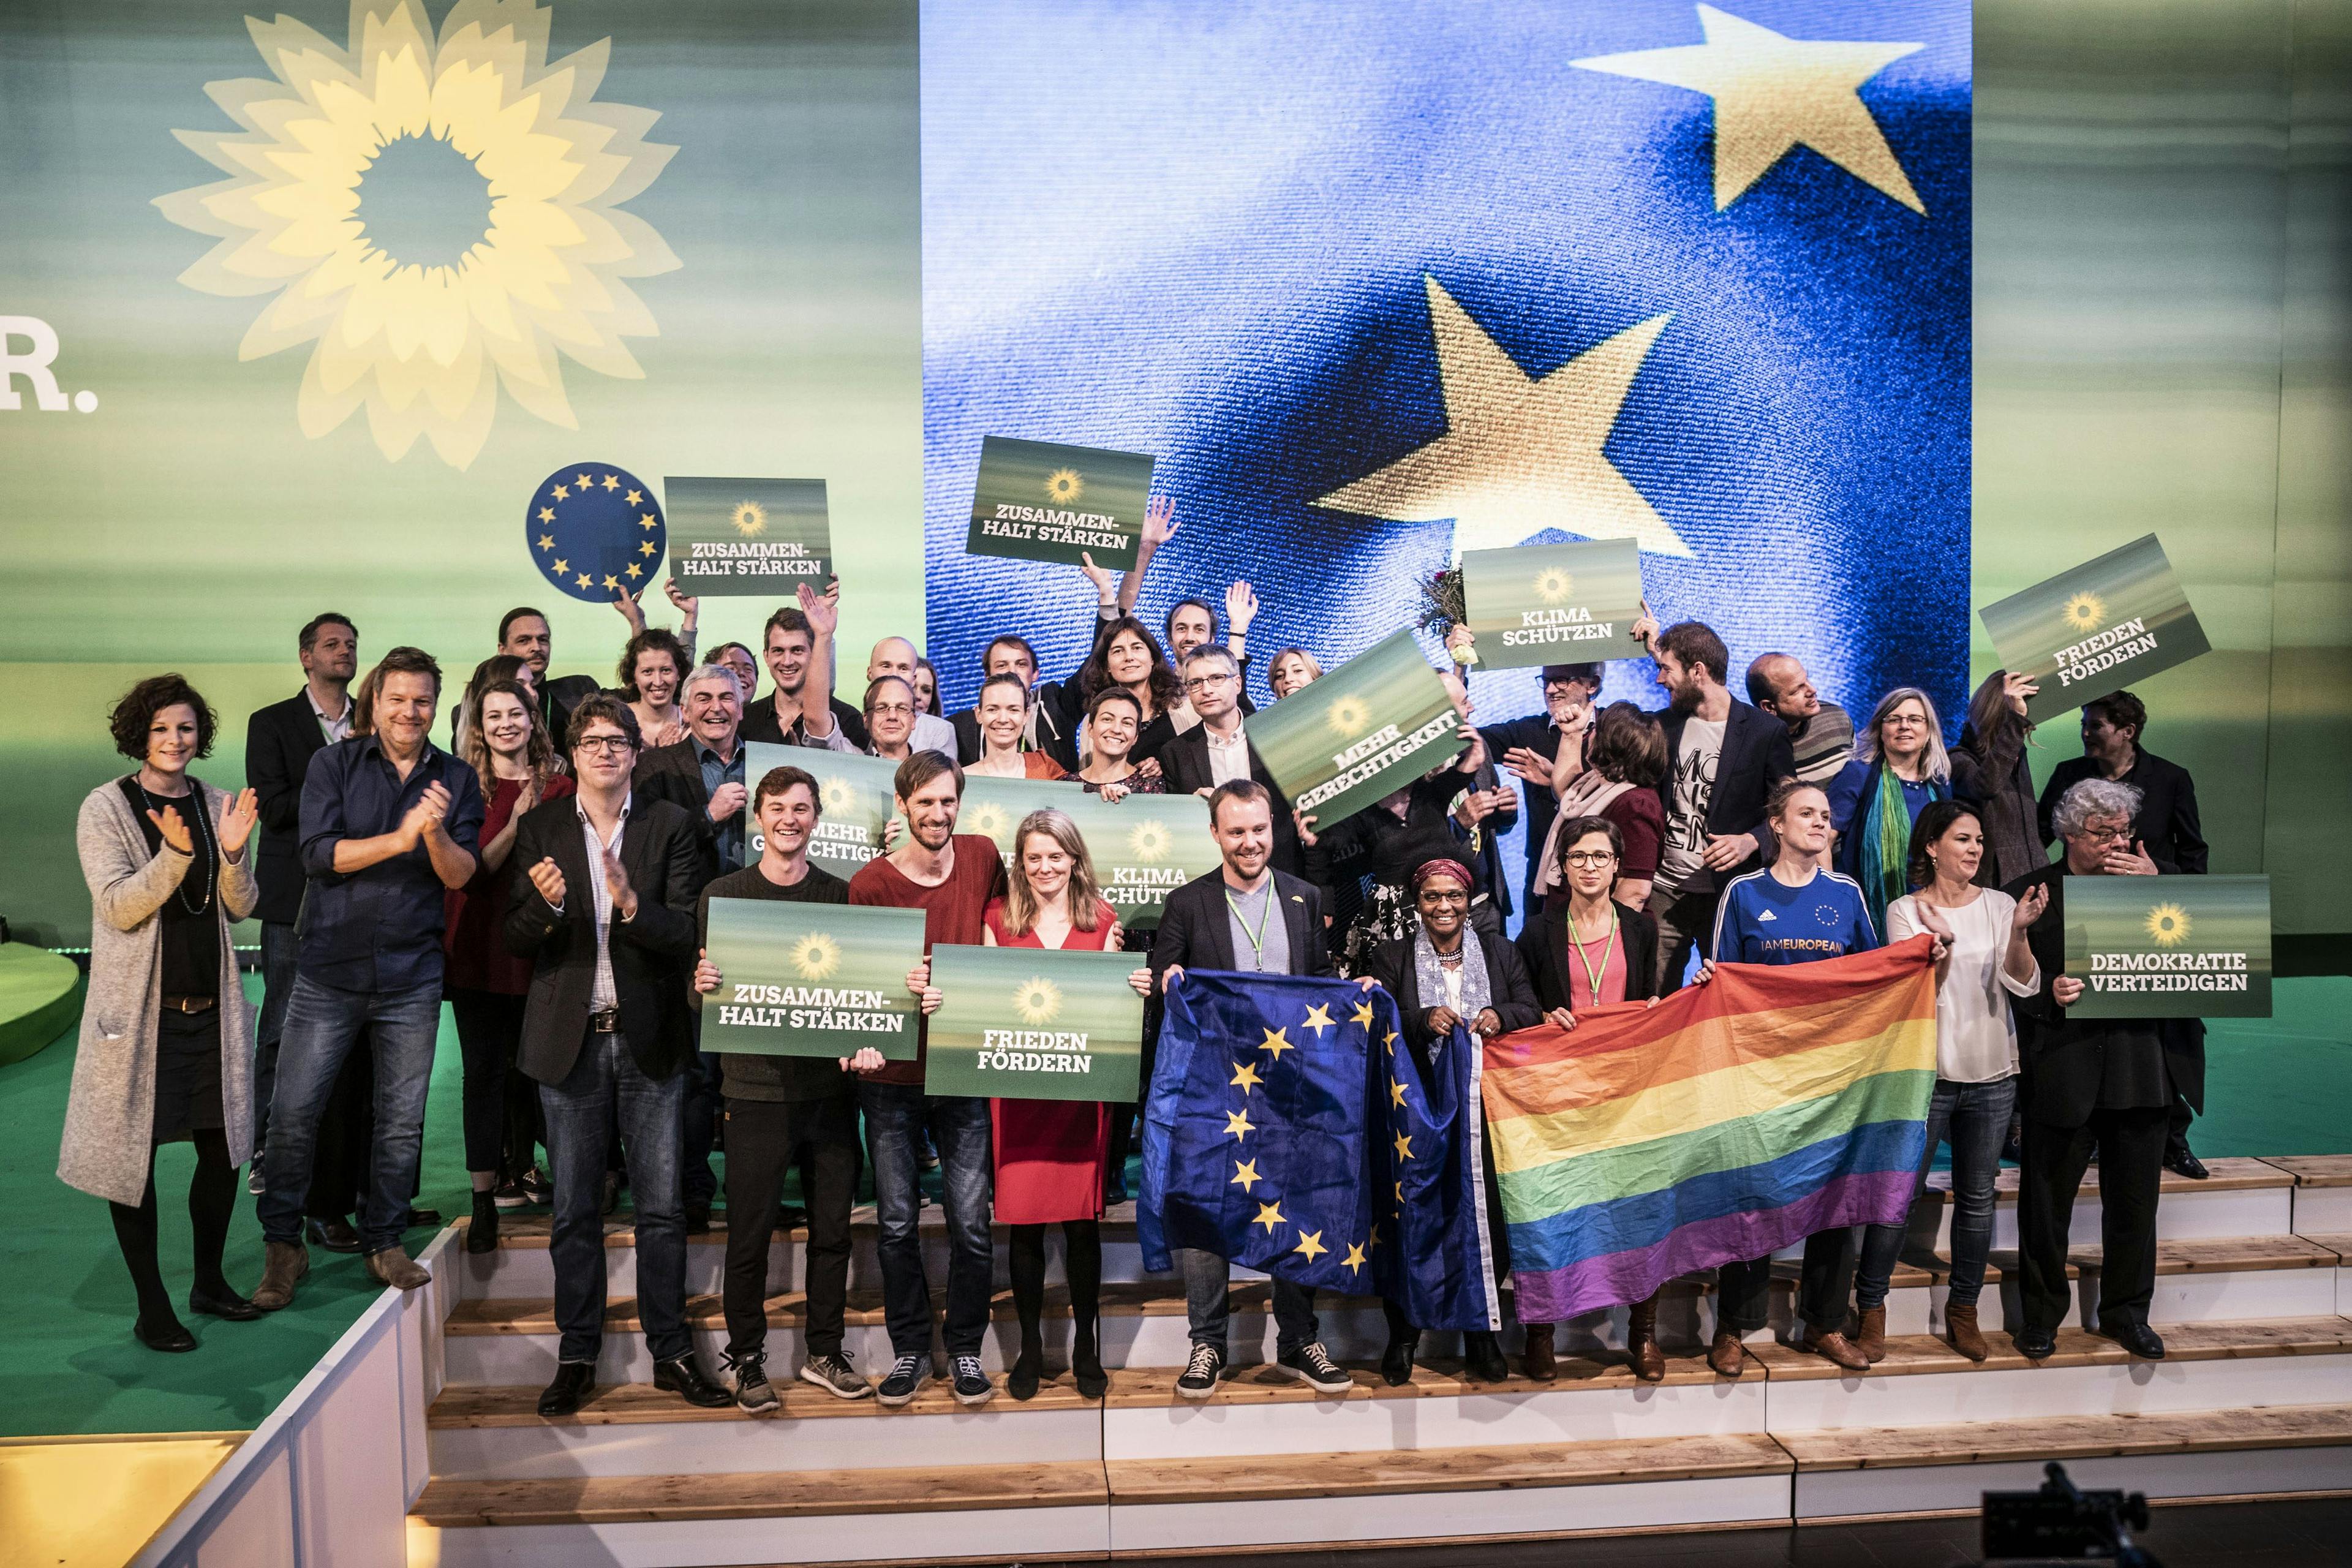 Mehrere Personen stehen auf dem Treppenabsatz einer Bühne und halten Schilder in die Höhe. Im Hintergrund ist ein Ausschnitt der Europaflagge zu sehen.